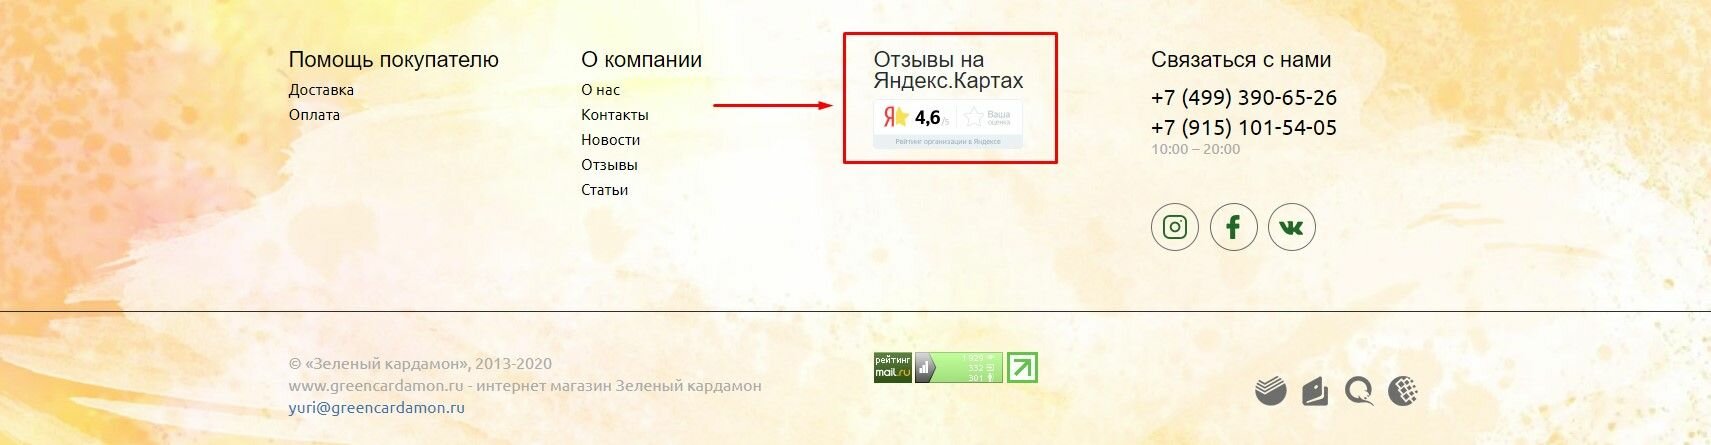 Рейтинг организации в футере на примере greencardamon.ru